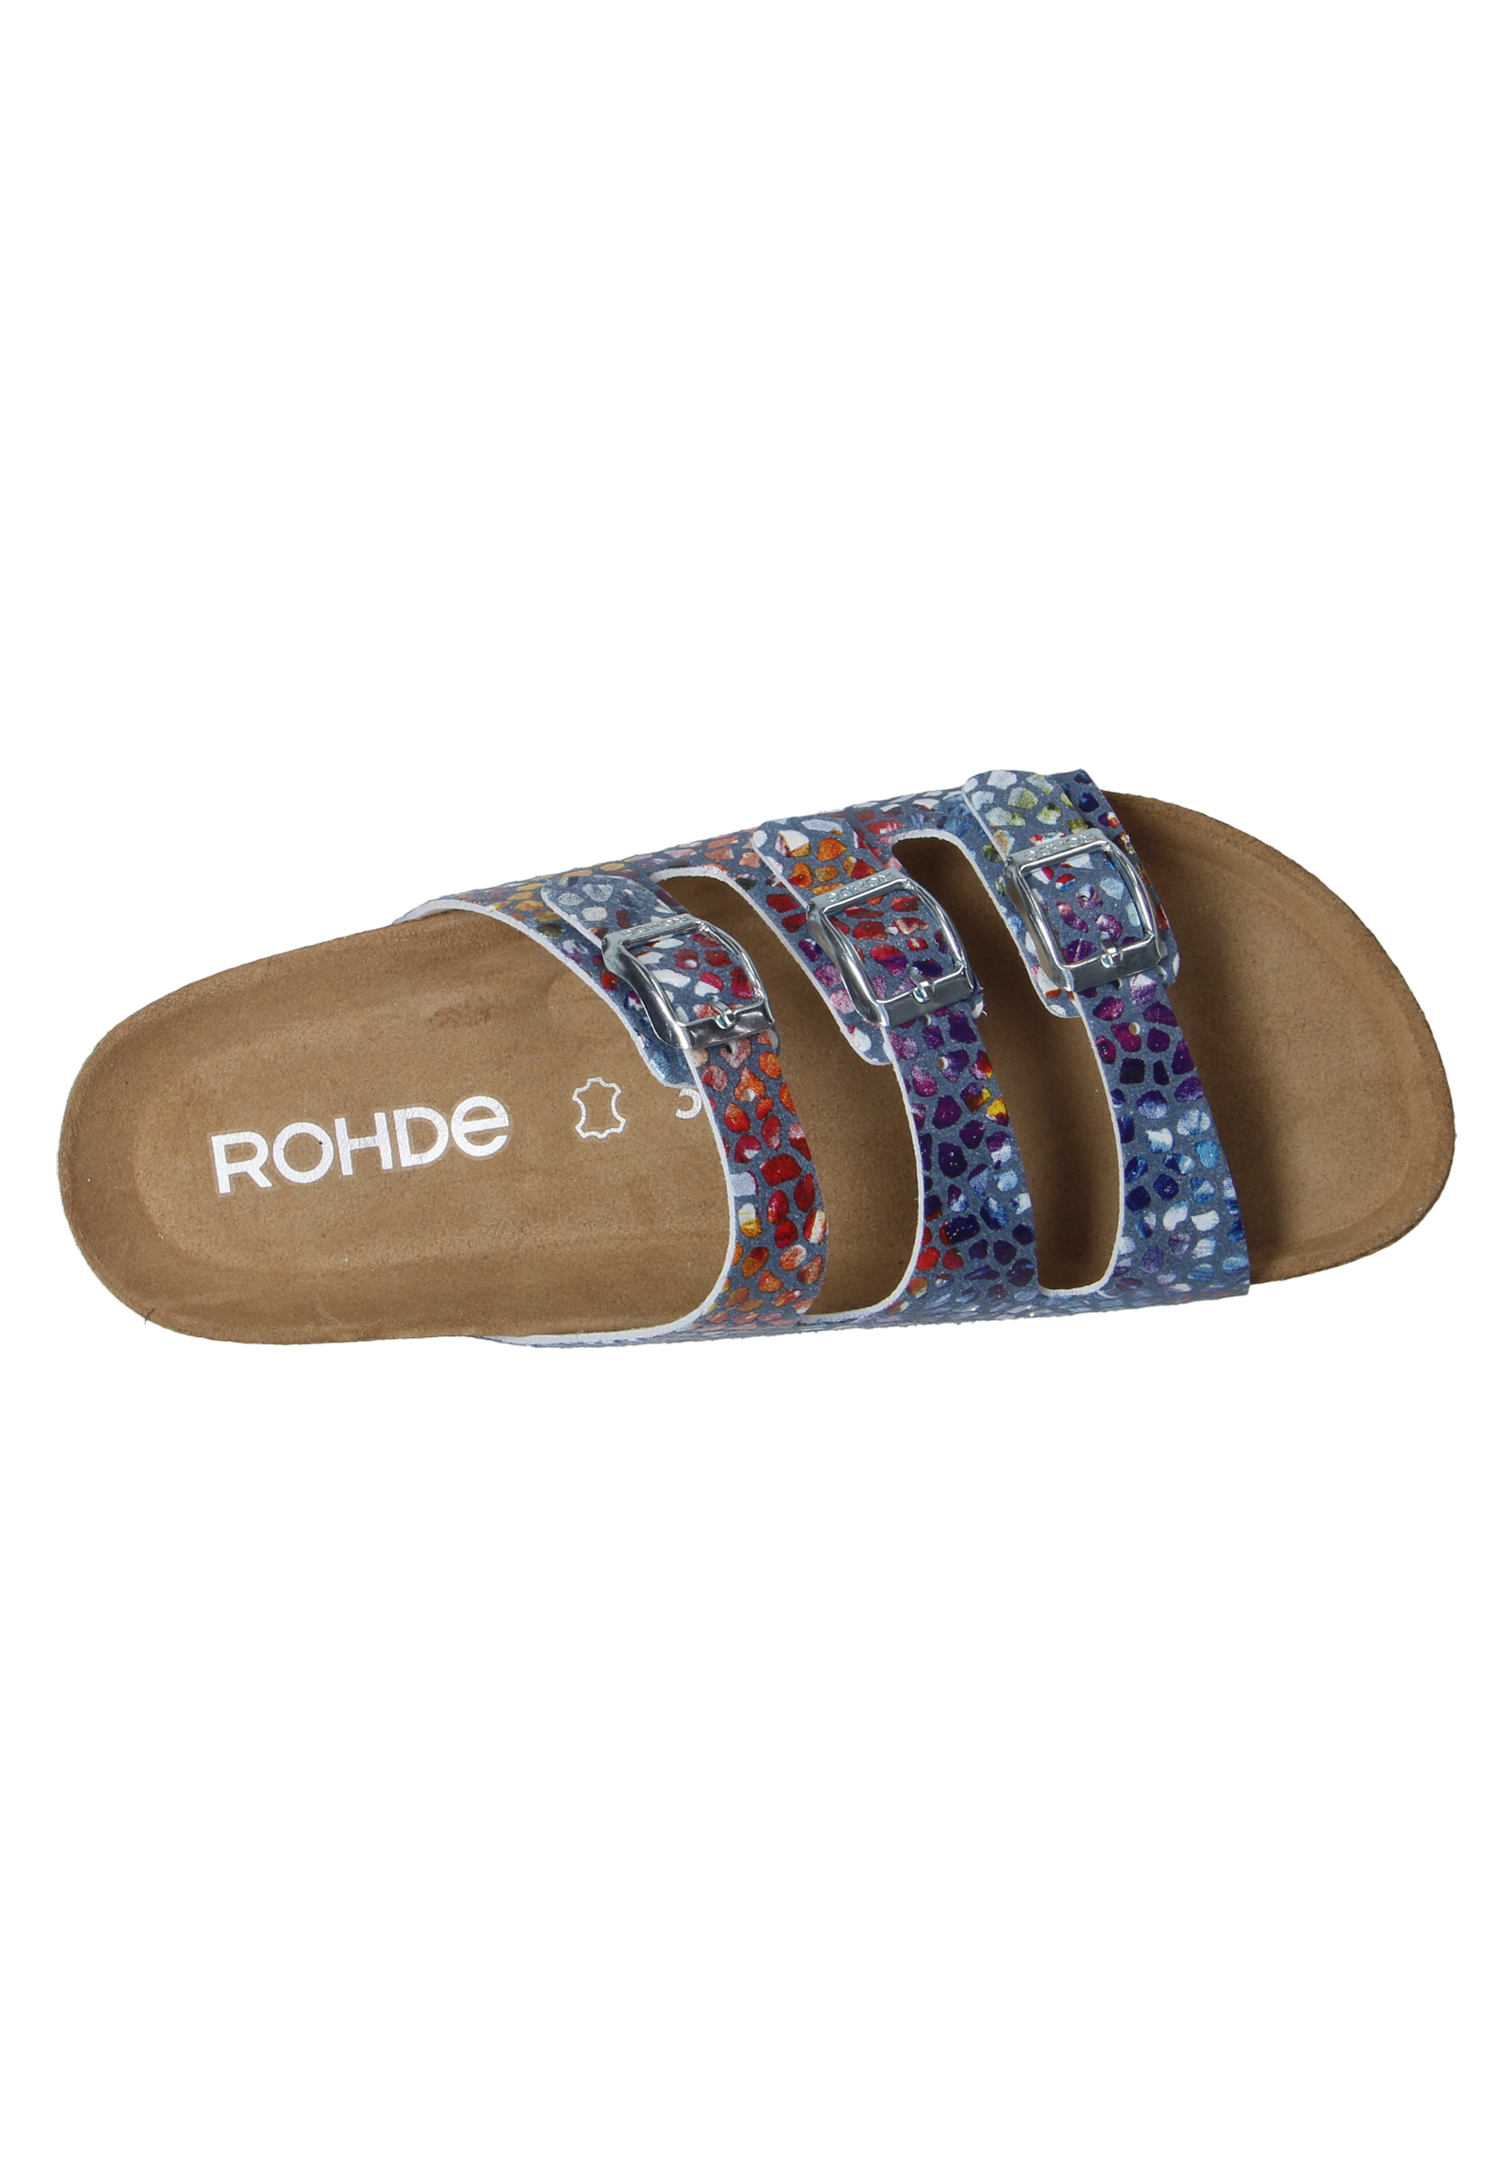 Rohde Sunnys N´13 Damen Pantolette Hausschuhe Sandale 5620 55 Jeans